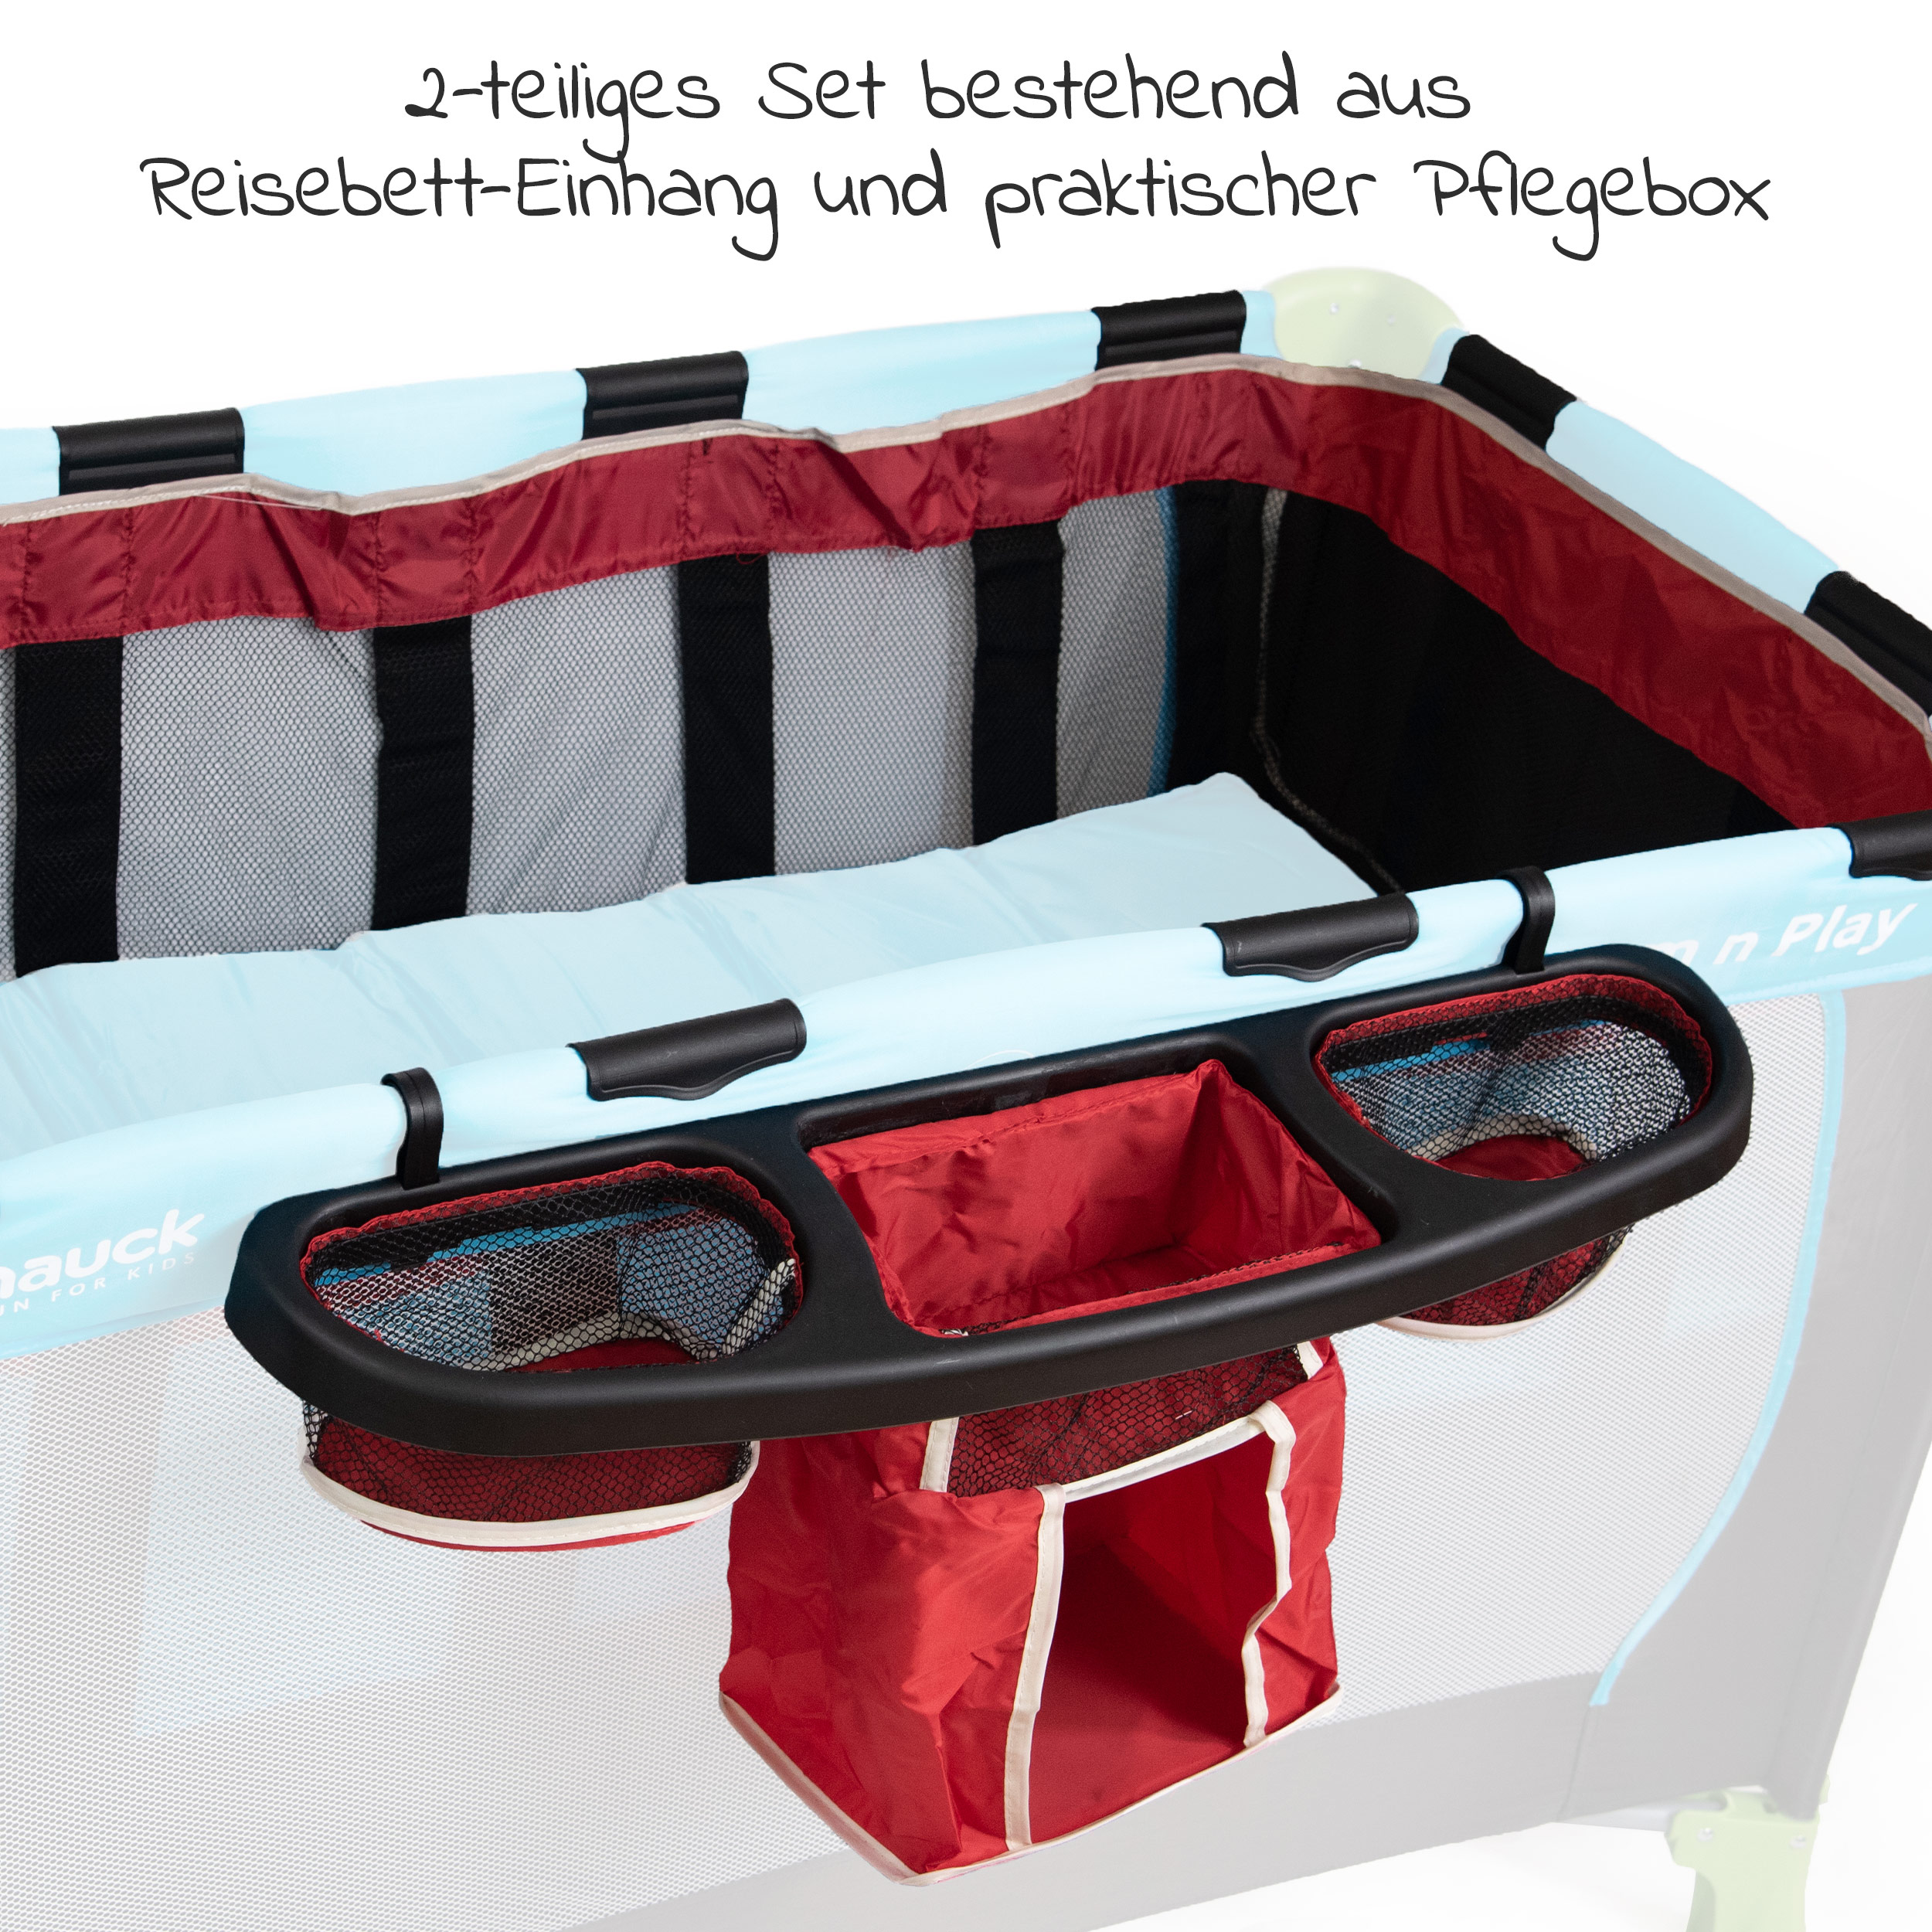 60 x 120 cm Red ESPRIT Reisebett Einhang Baby Pflegebox Organiser Universal 